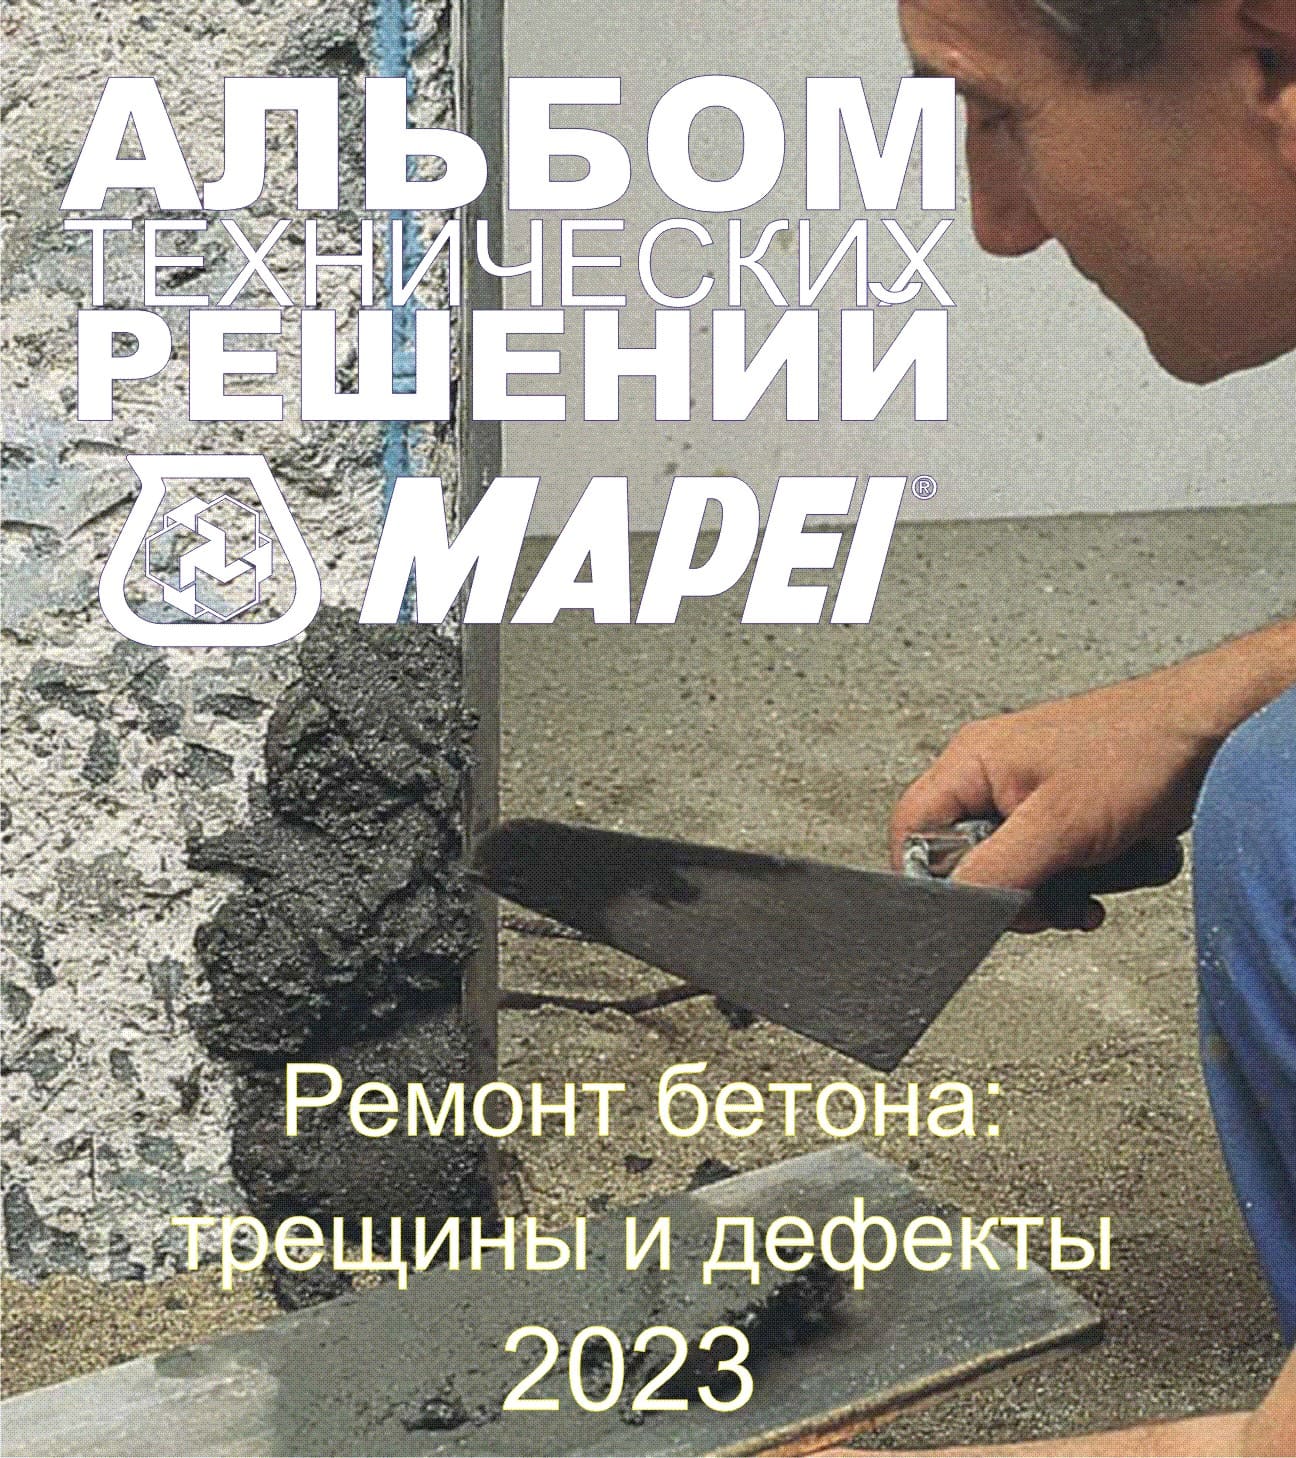 Уважаемые партнеры! Представляем вам Альбом Технических Решений для ремонт бетона от МАПЕИ!